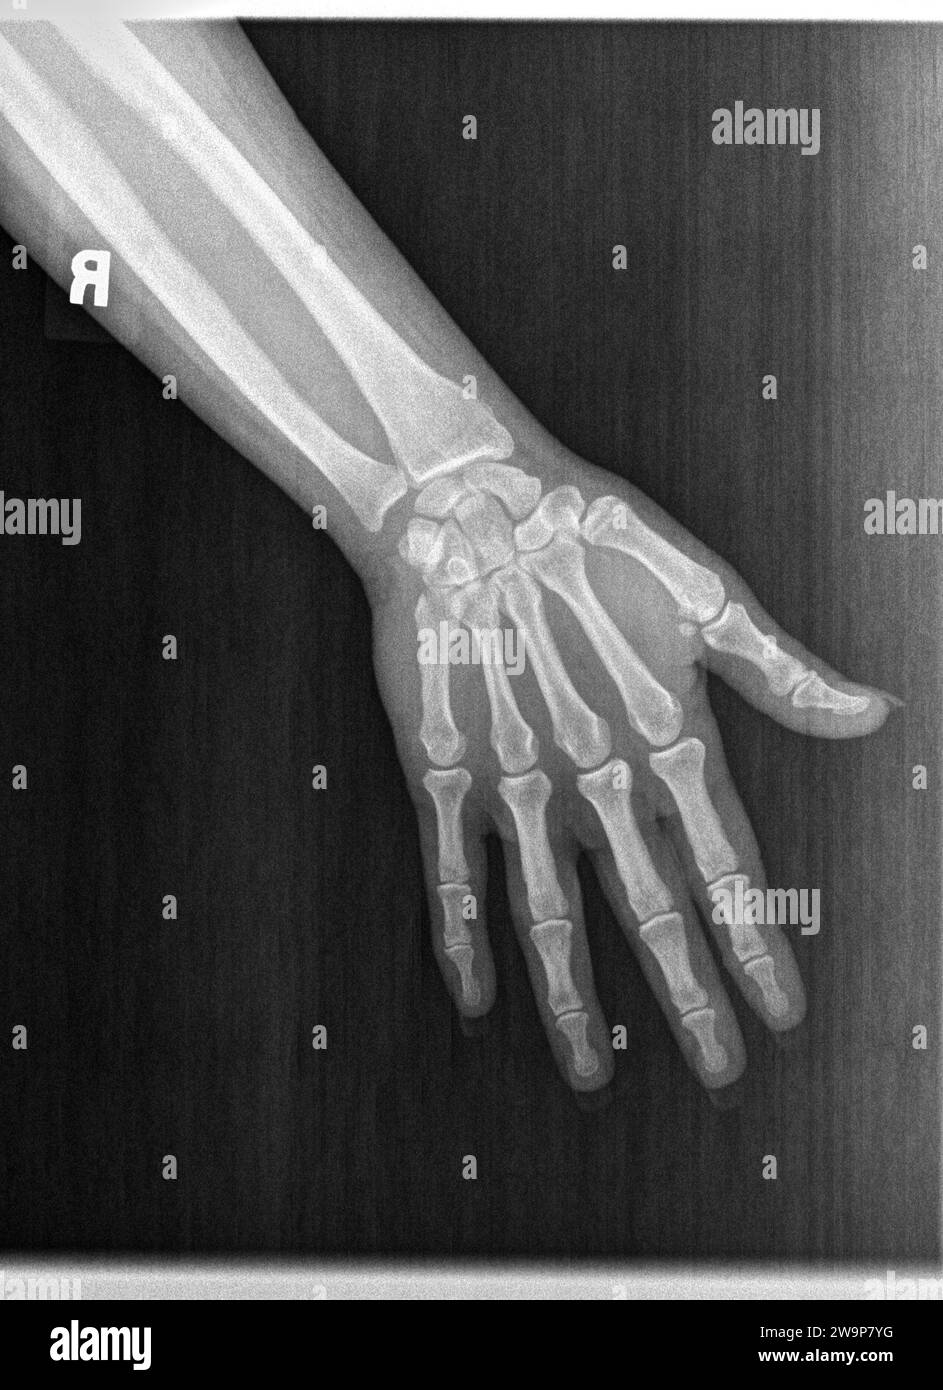 Radiographie de film ou radiographie d'une main gauche normale d'un homme adulte. La vue AP montre la main de l'homme. structure osseuse normale de toutes les phalanges os carpiens métacariens Banque D'Images